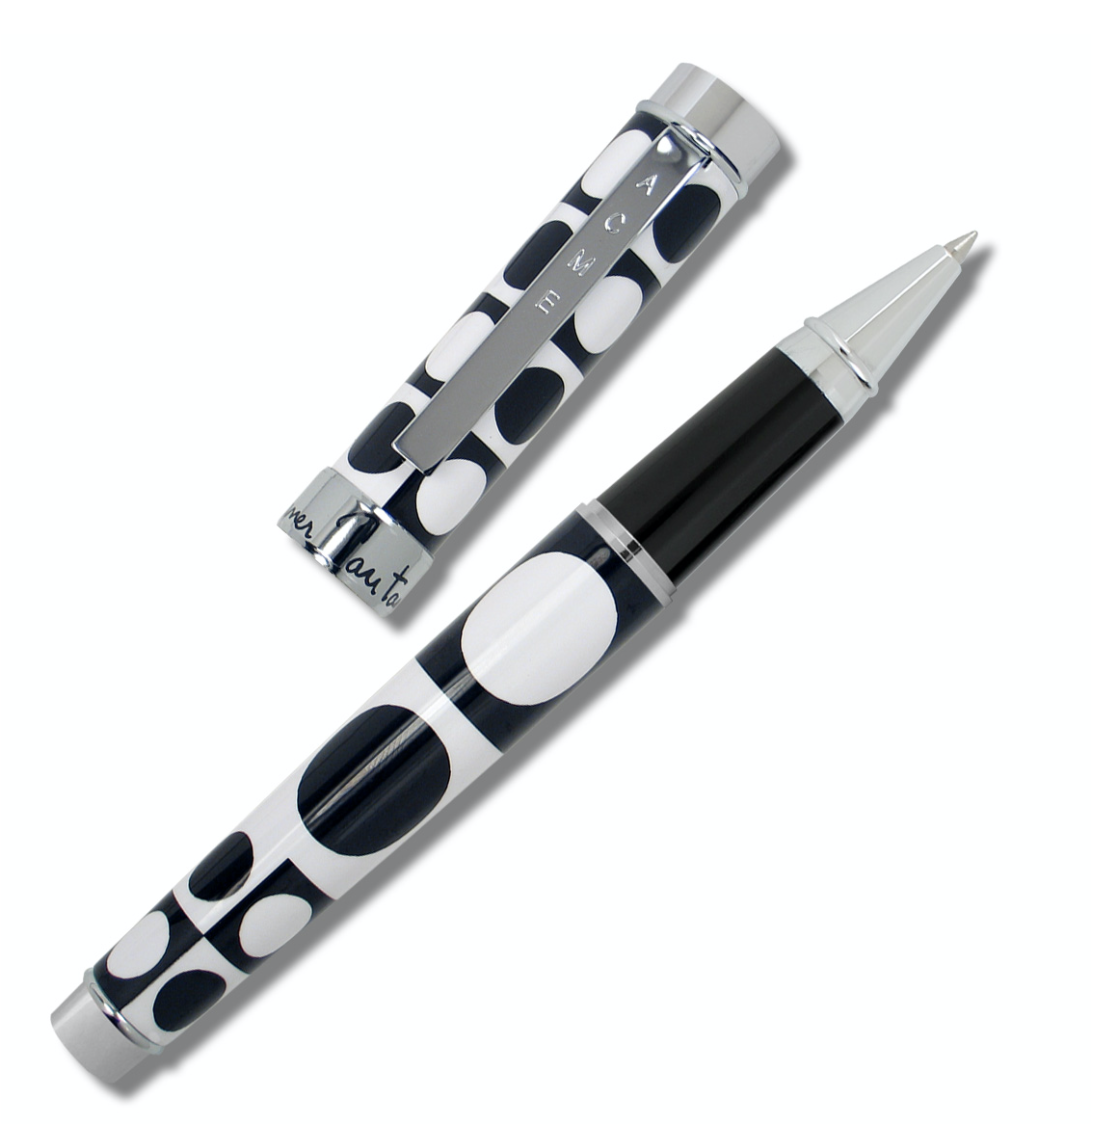 ACME Studio VERNER PANTON “Geometri Black & White” Roller Ball Pen  NEW